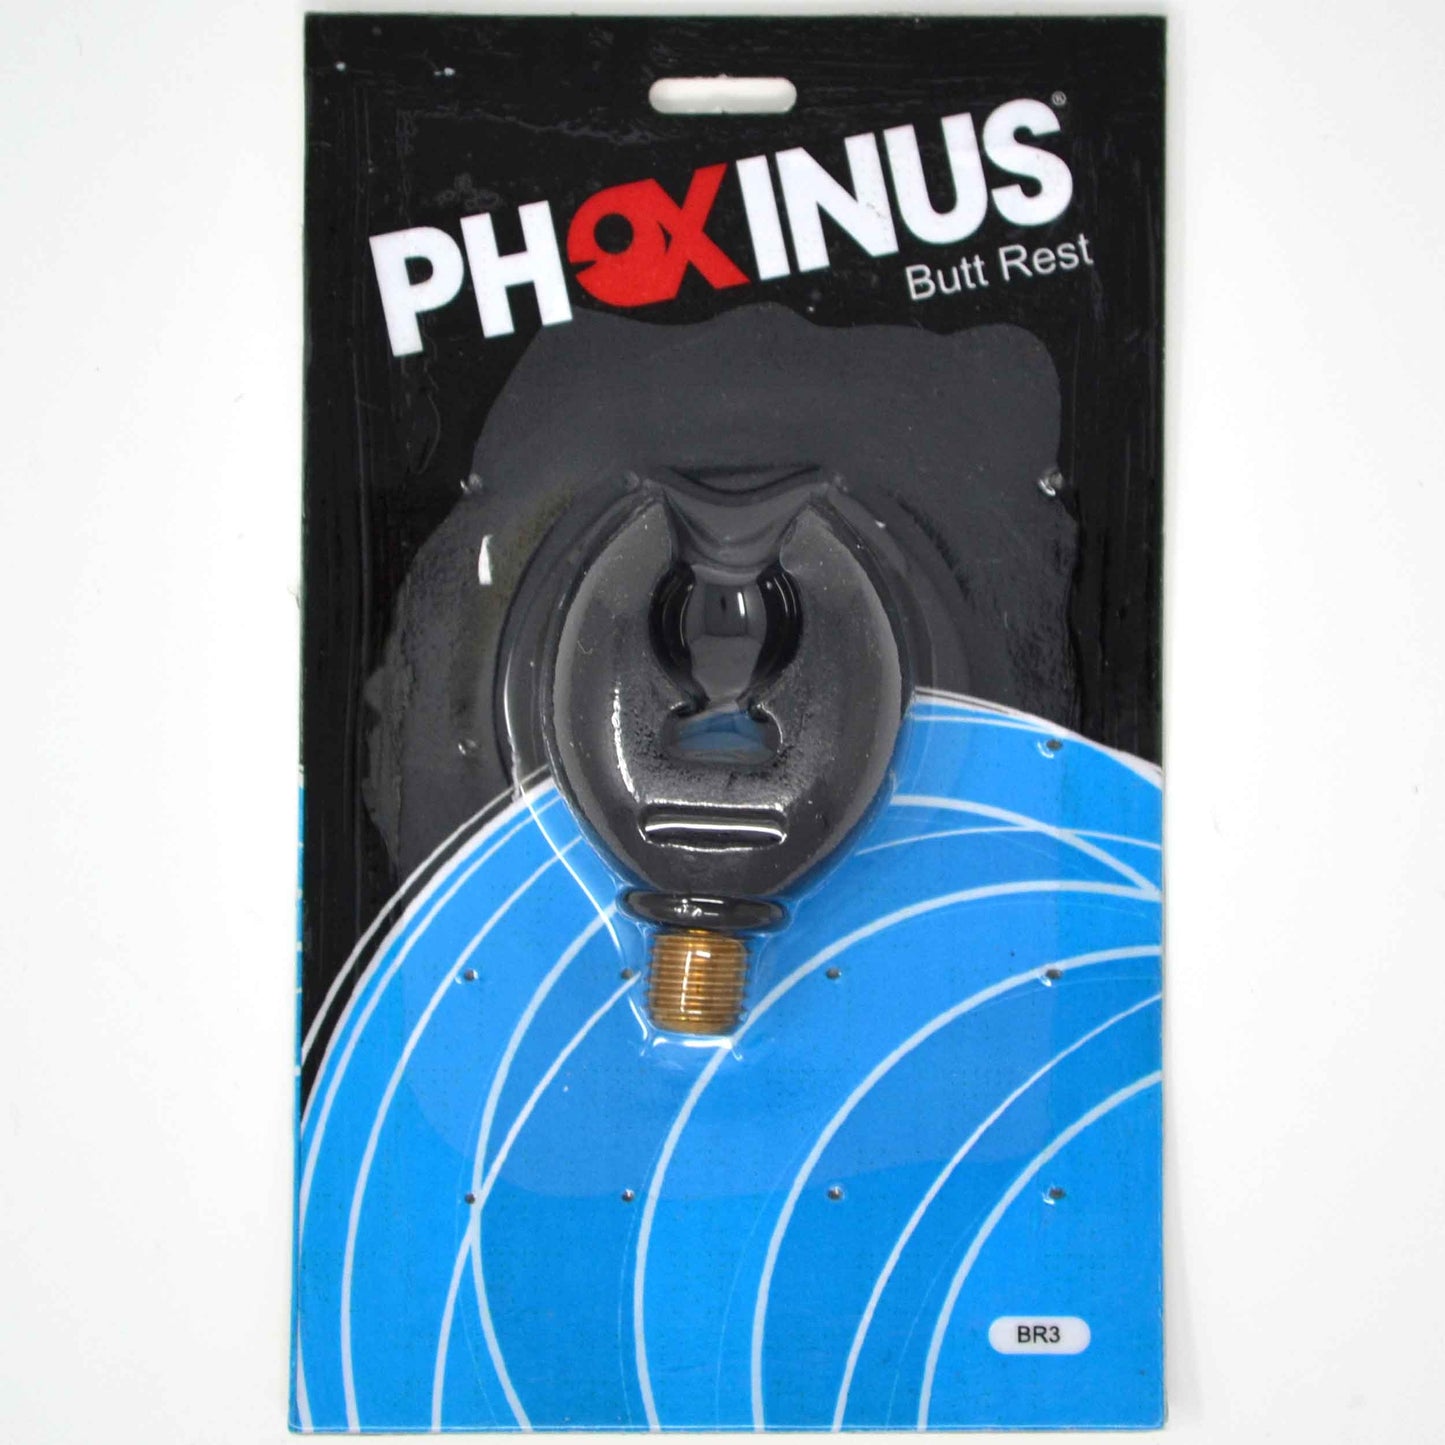 3 Phoxinus Rubber Butt Grips